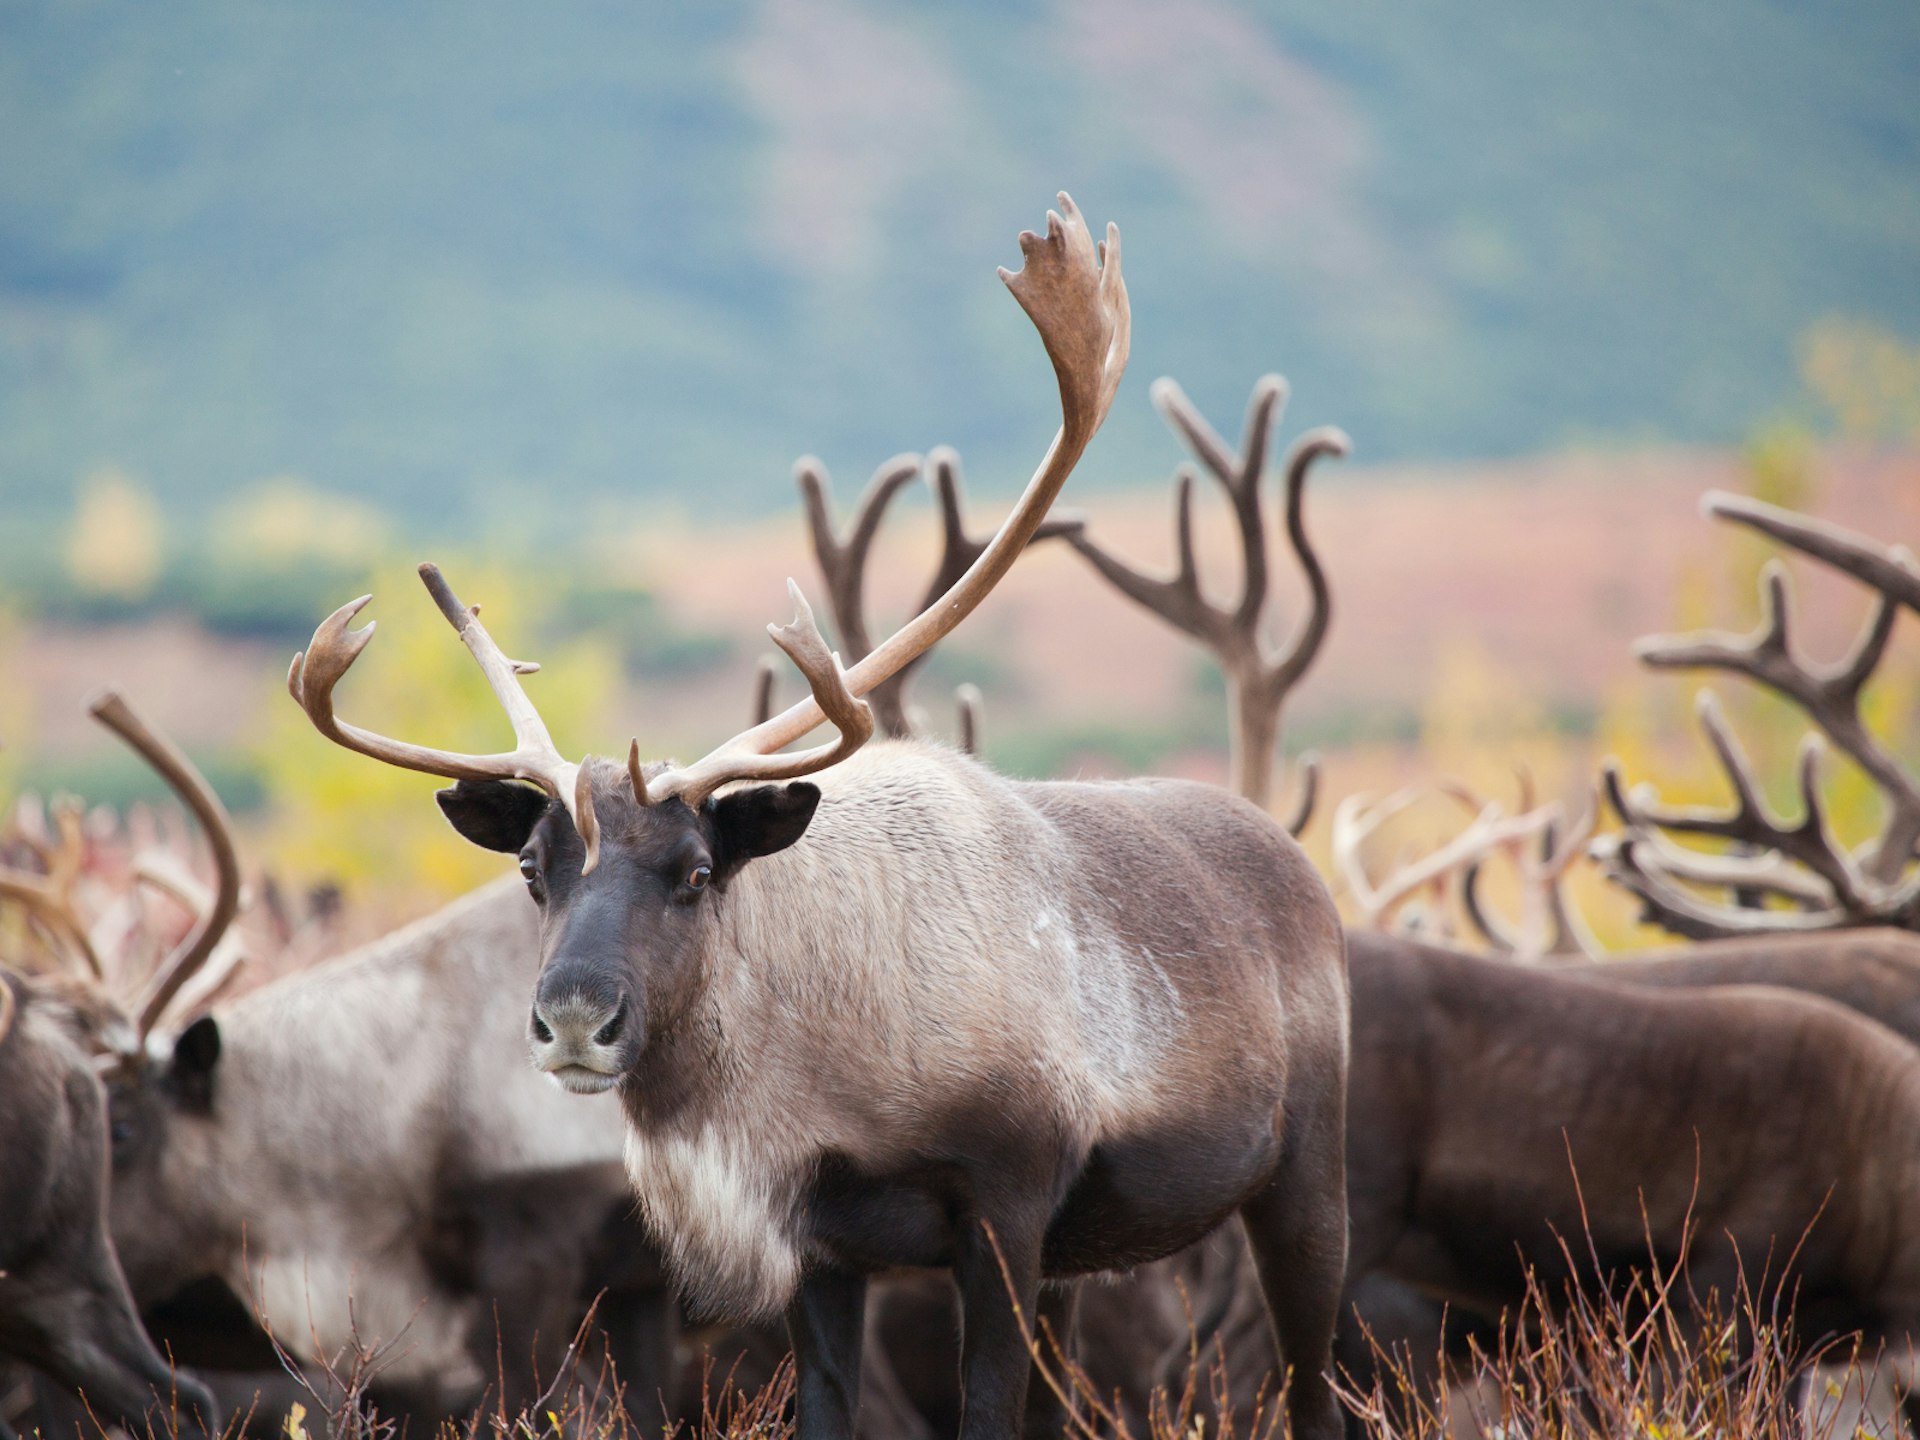 Kamchatka is home to incredible wildlife, including herds of reindeer © Evgeniia Ozerkina / Shutterstock